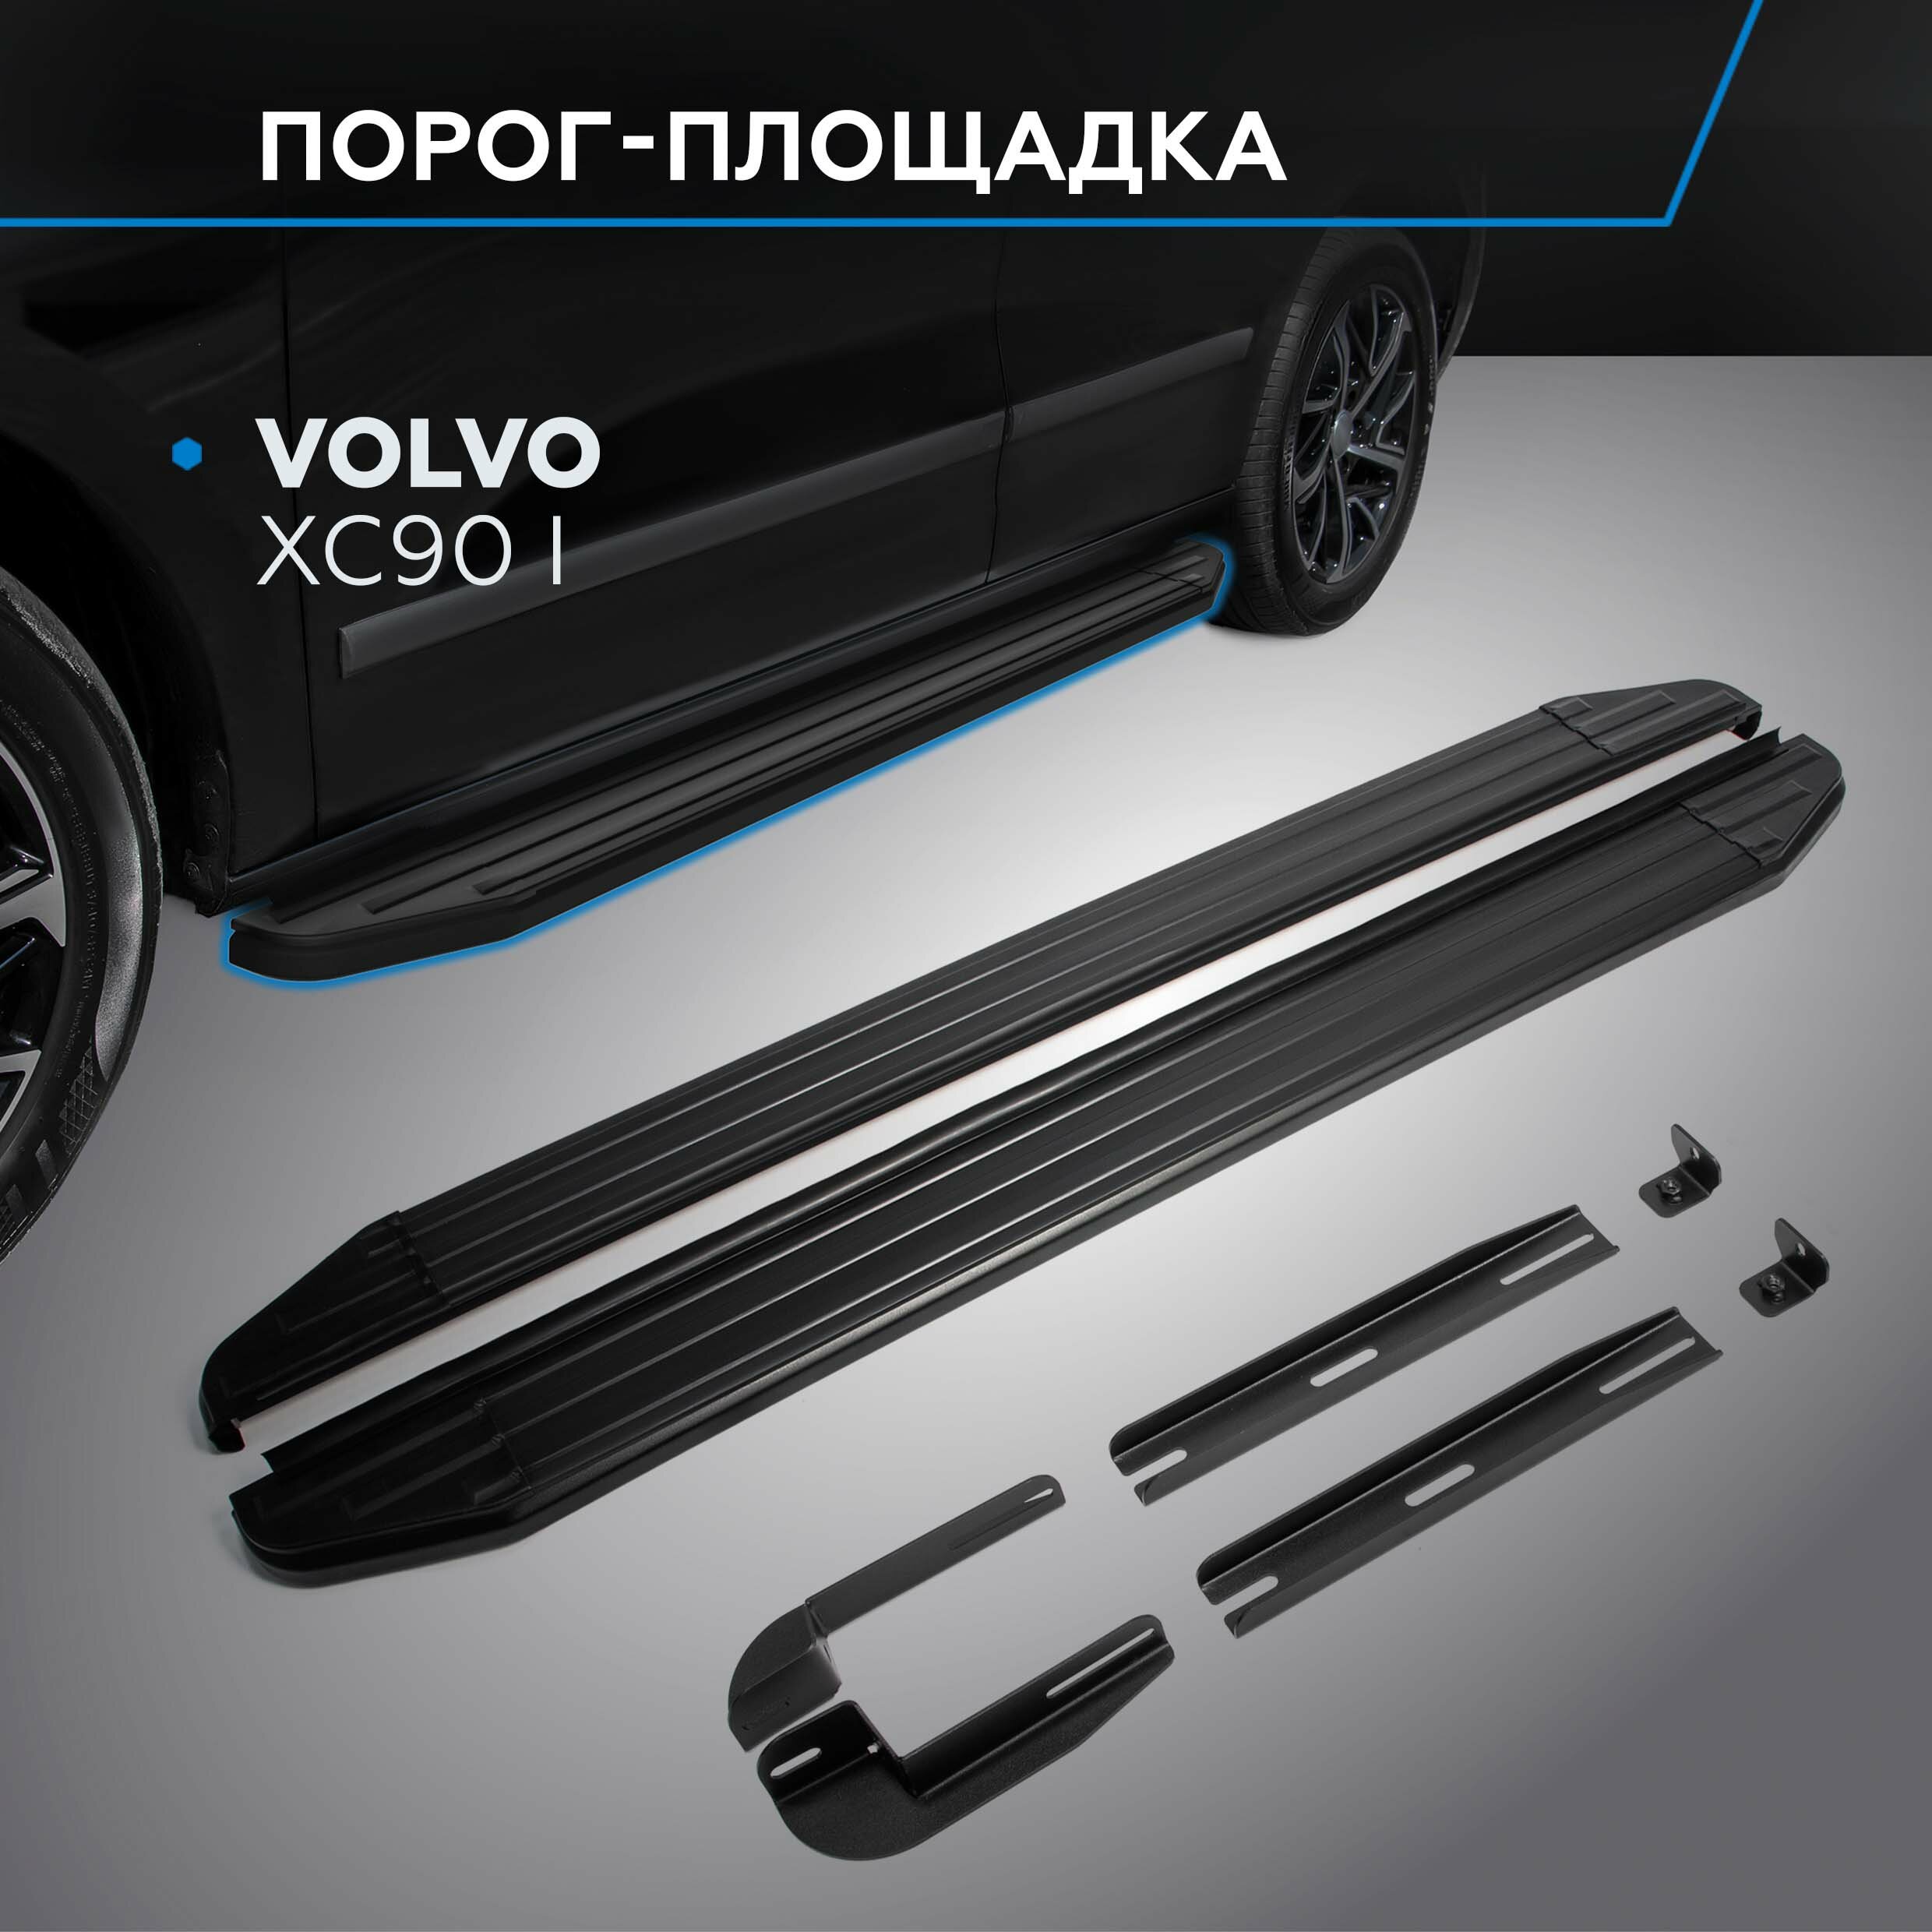 Пороги на автомобиль "Premium-Black" Rival для Volvo XC90 I 2002-2014 193 см 2 шт алюминий A193ALB.5901.1